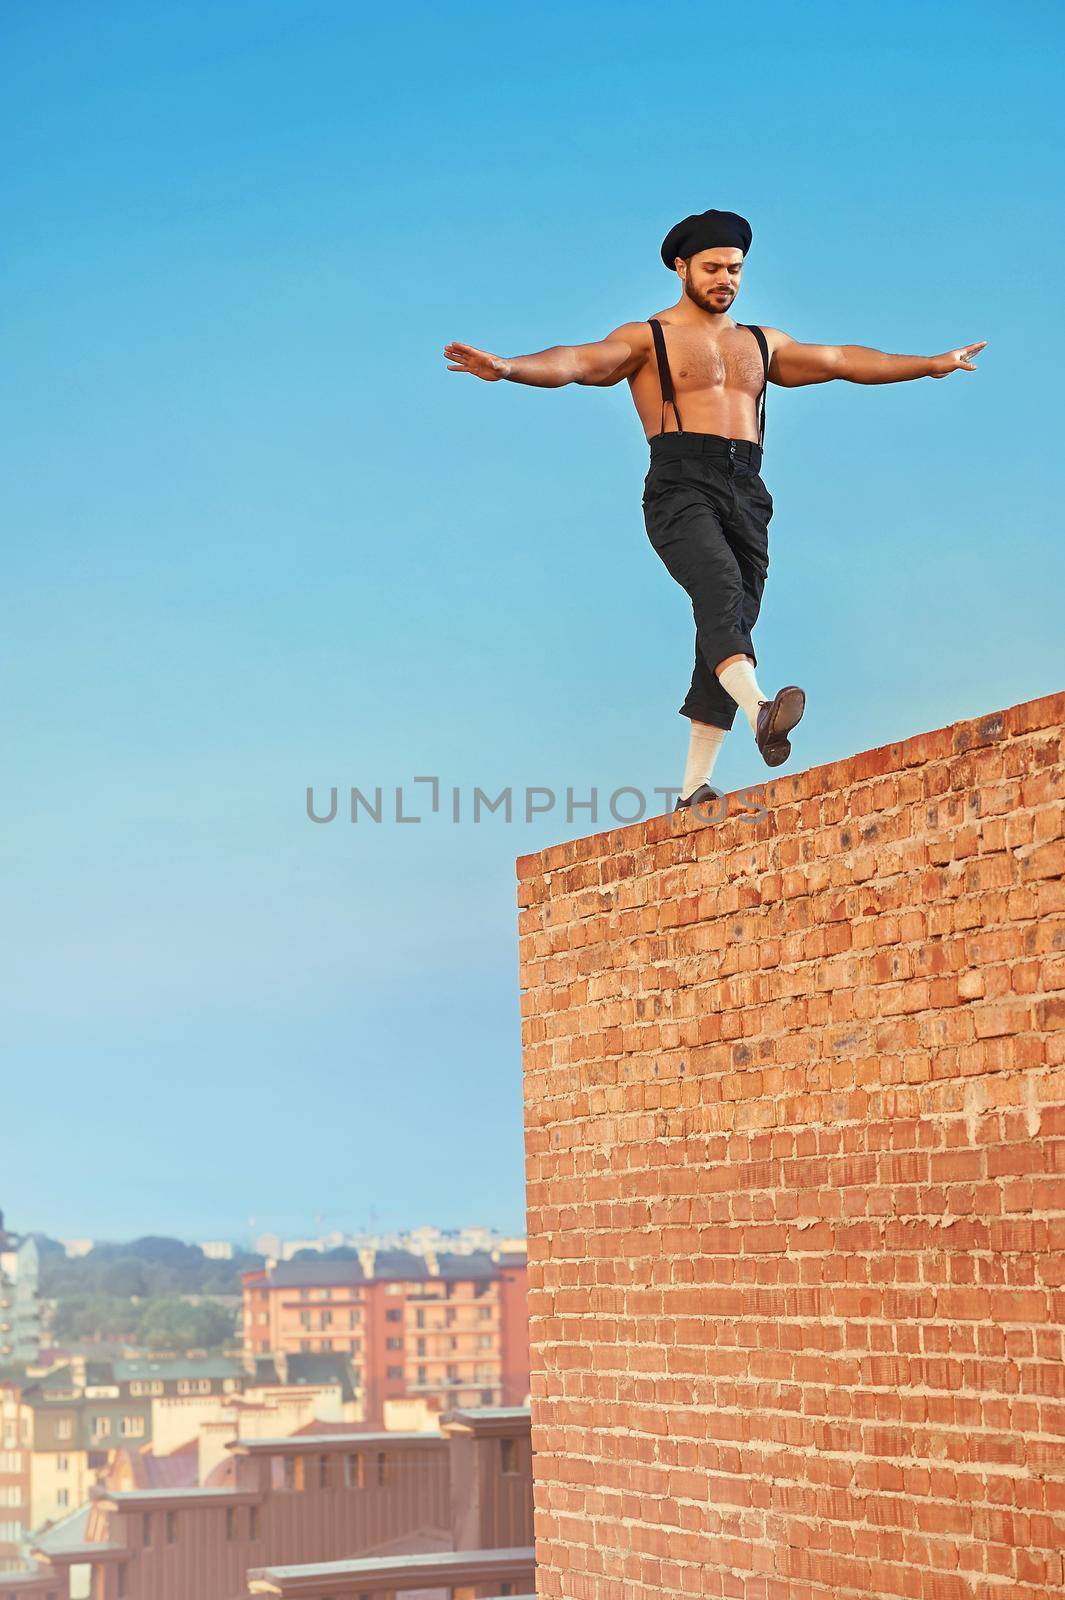 Balancing high. Shot of a shirtless retro male builder walking balancing on a brick wall